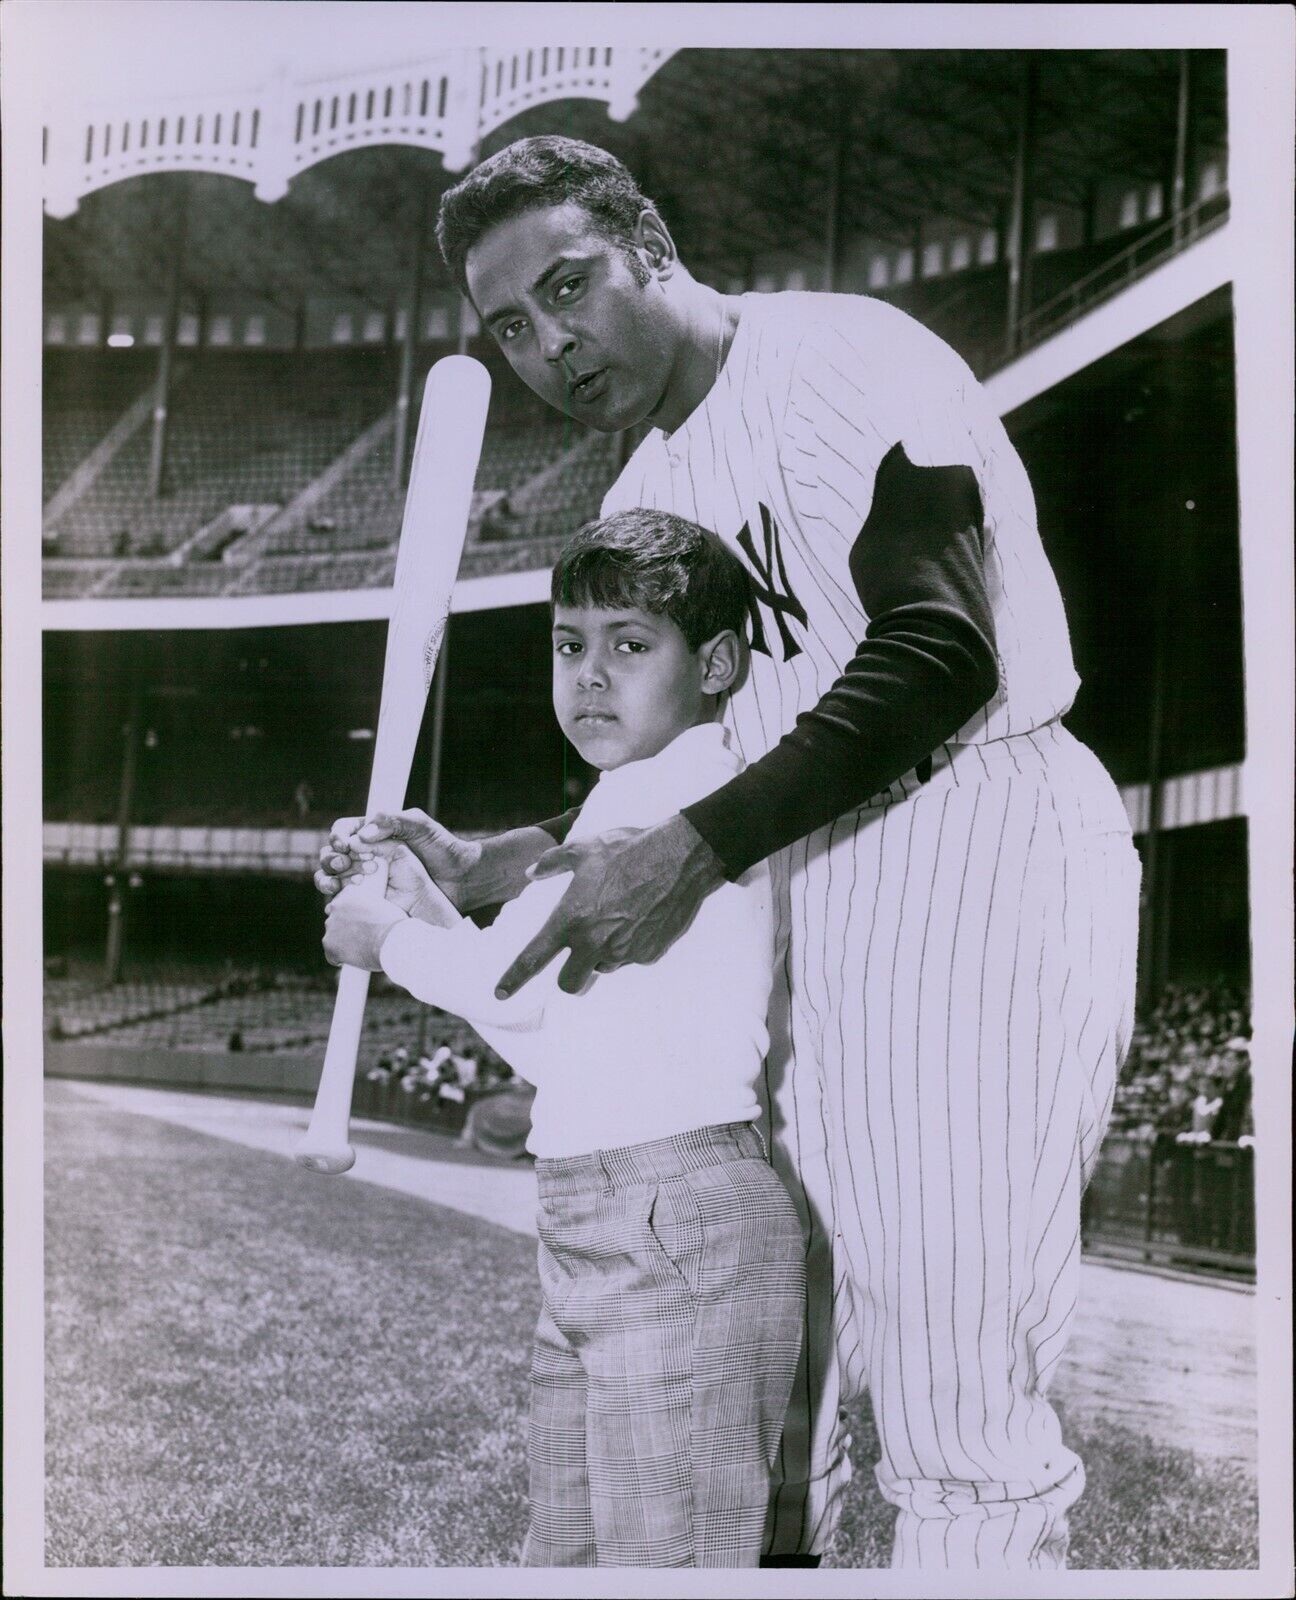 LG770 1968 Original Requena Photo POPPA RUBEN AMARO New York Yankees Baseball